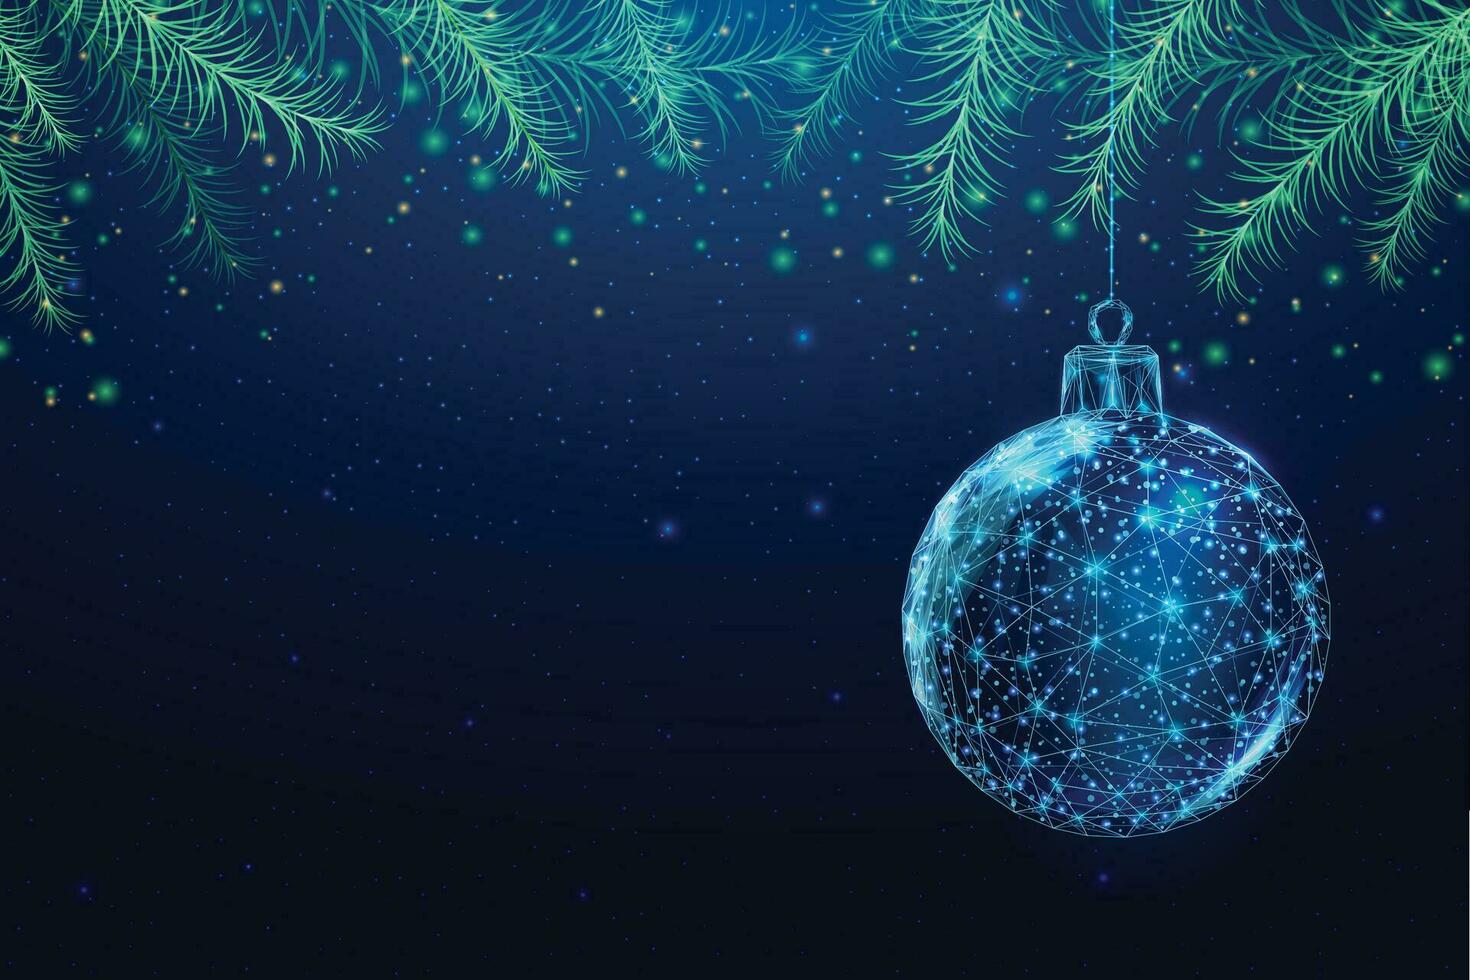 Weihnachtsbaumzweige, Low-Poly-Stil. banner für das konzept von weihnachten oder neujahr mit einem platz für eine inschrift. abstrakte moderne Vektorillustration auf blauem Hintergrund. vektor